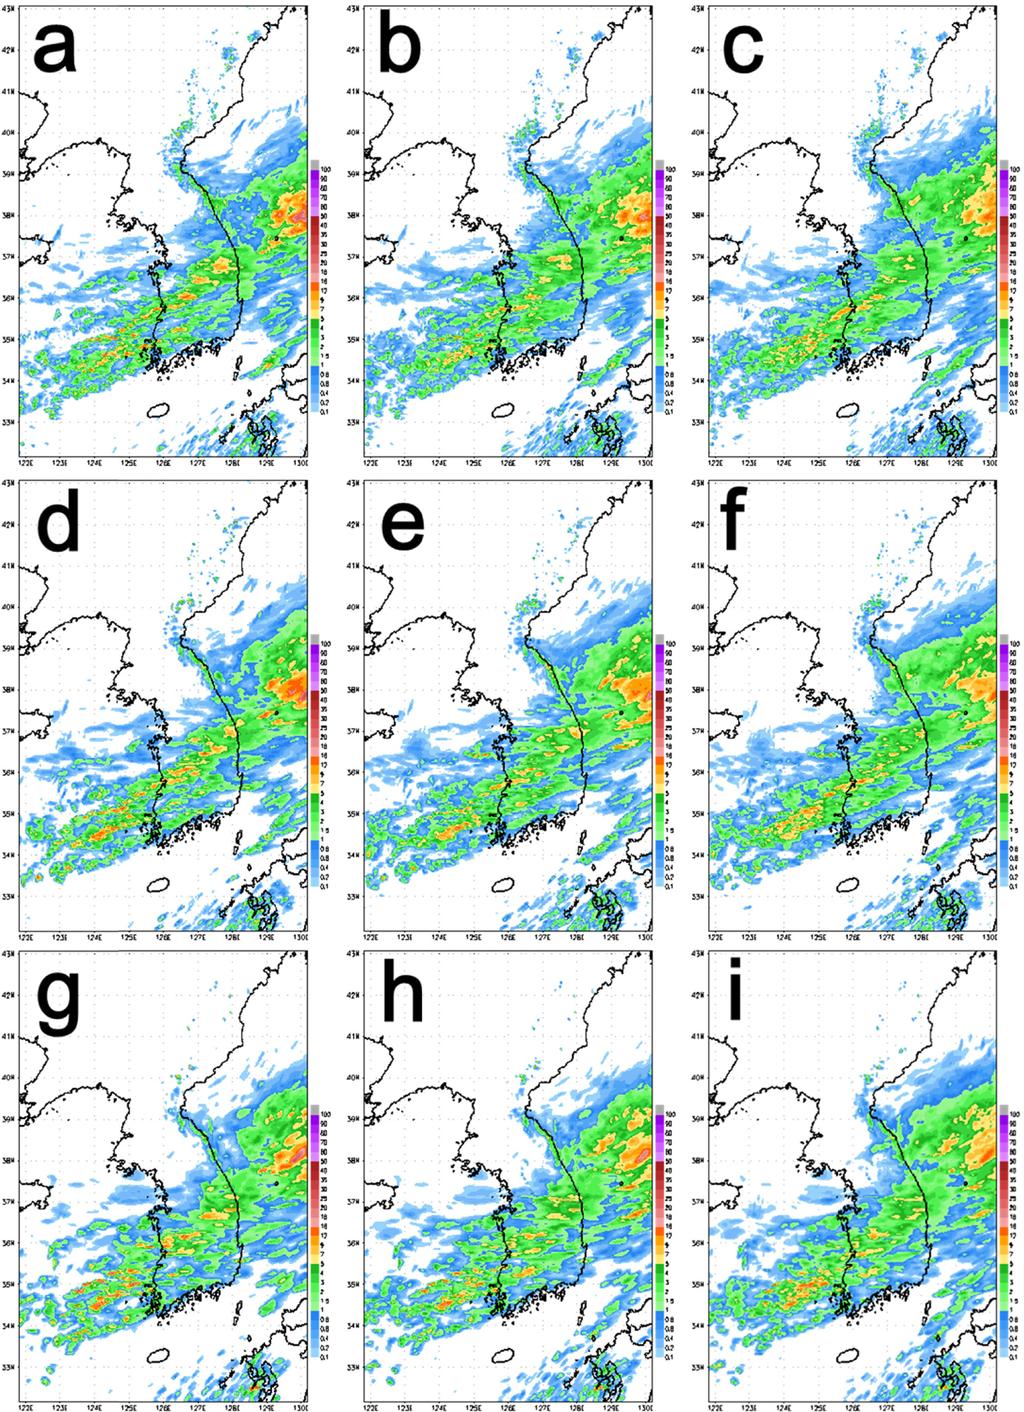 78 기상청 고해상도 국지 앙상블 예측 시스템 구축 및 성능 검증 Fig. 1. Ensemble mean of 1 hr accumulated precipitation forecasts for each member and resolution at 0000 UTC 13 Aug. 01 (top row: 1.